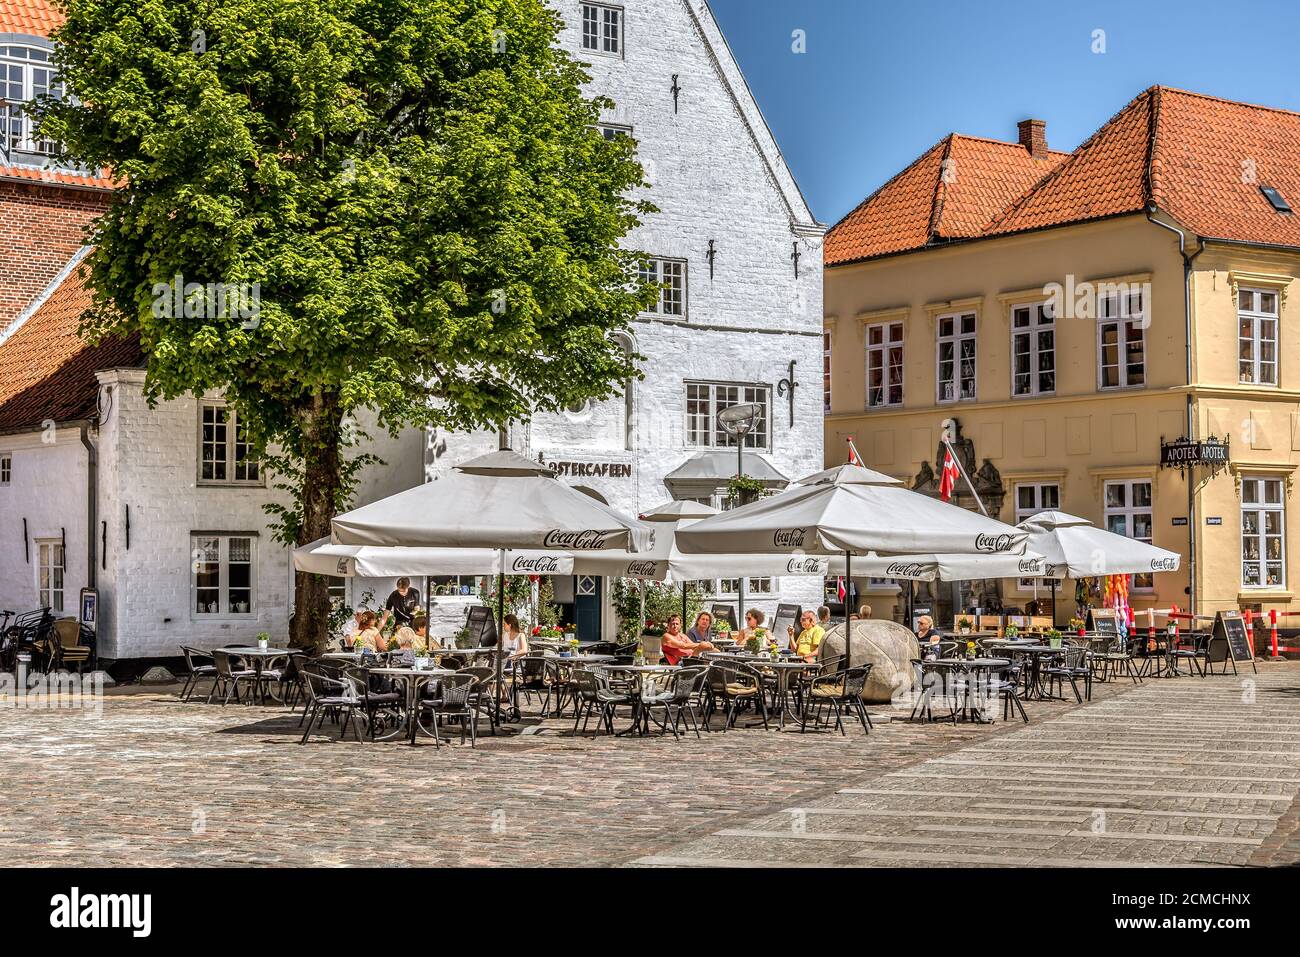 Restaurants in der Sonne mit Sonnenschirmen auf dem Platz in Tonder, Dänemark, 1. Juni 2020 Stockfoto